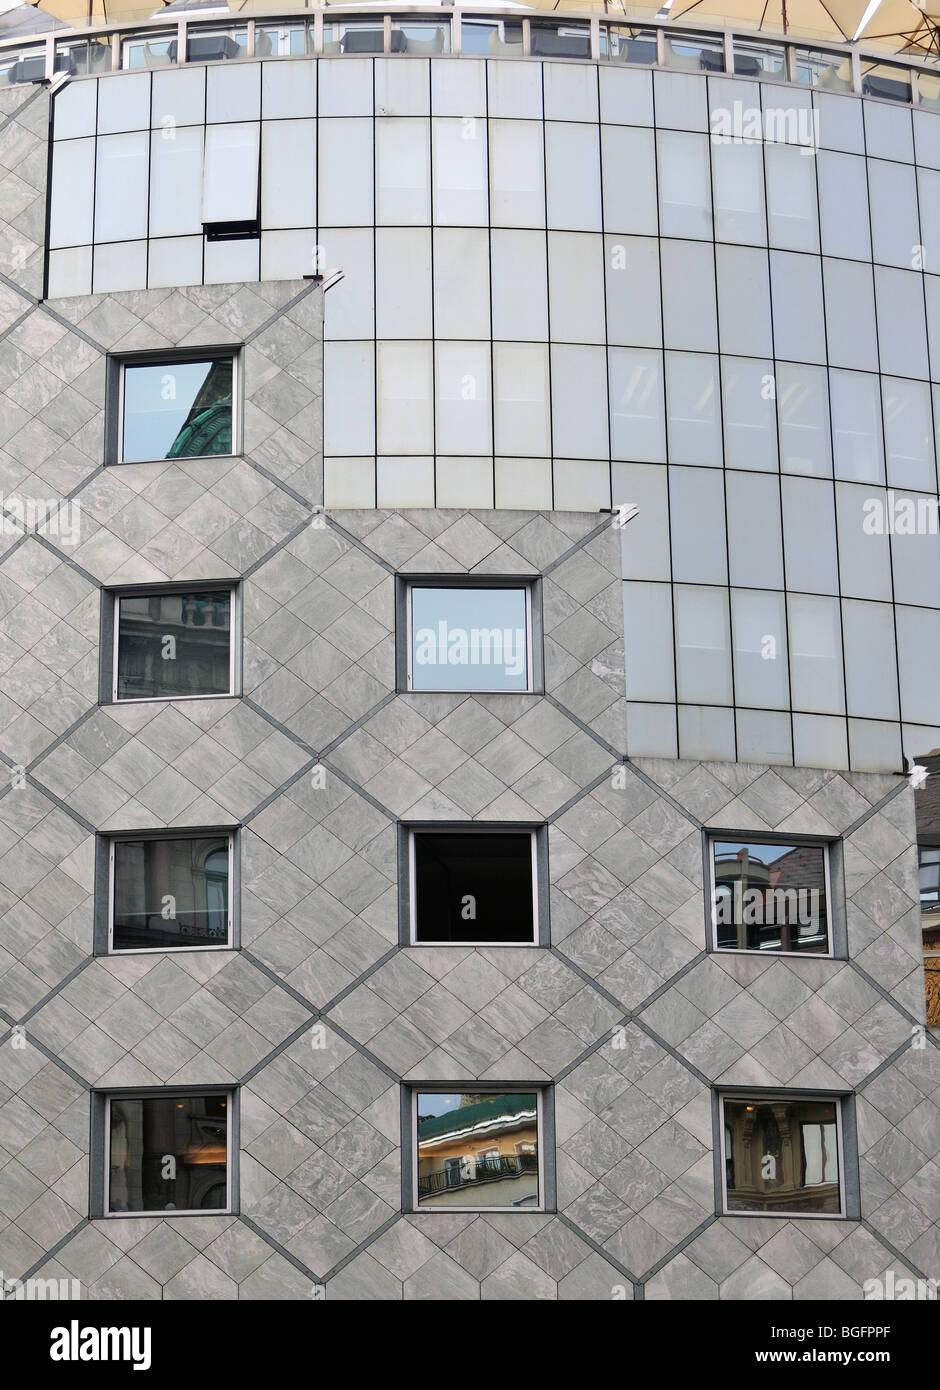 Détail de façade de bâtiment postmoderne Haas-Haus à Vienne (Wien), l'Autriche, conçu par l'architecte Hans Hollein Banque D'Images